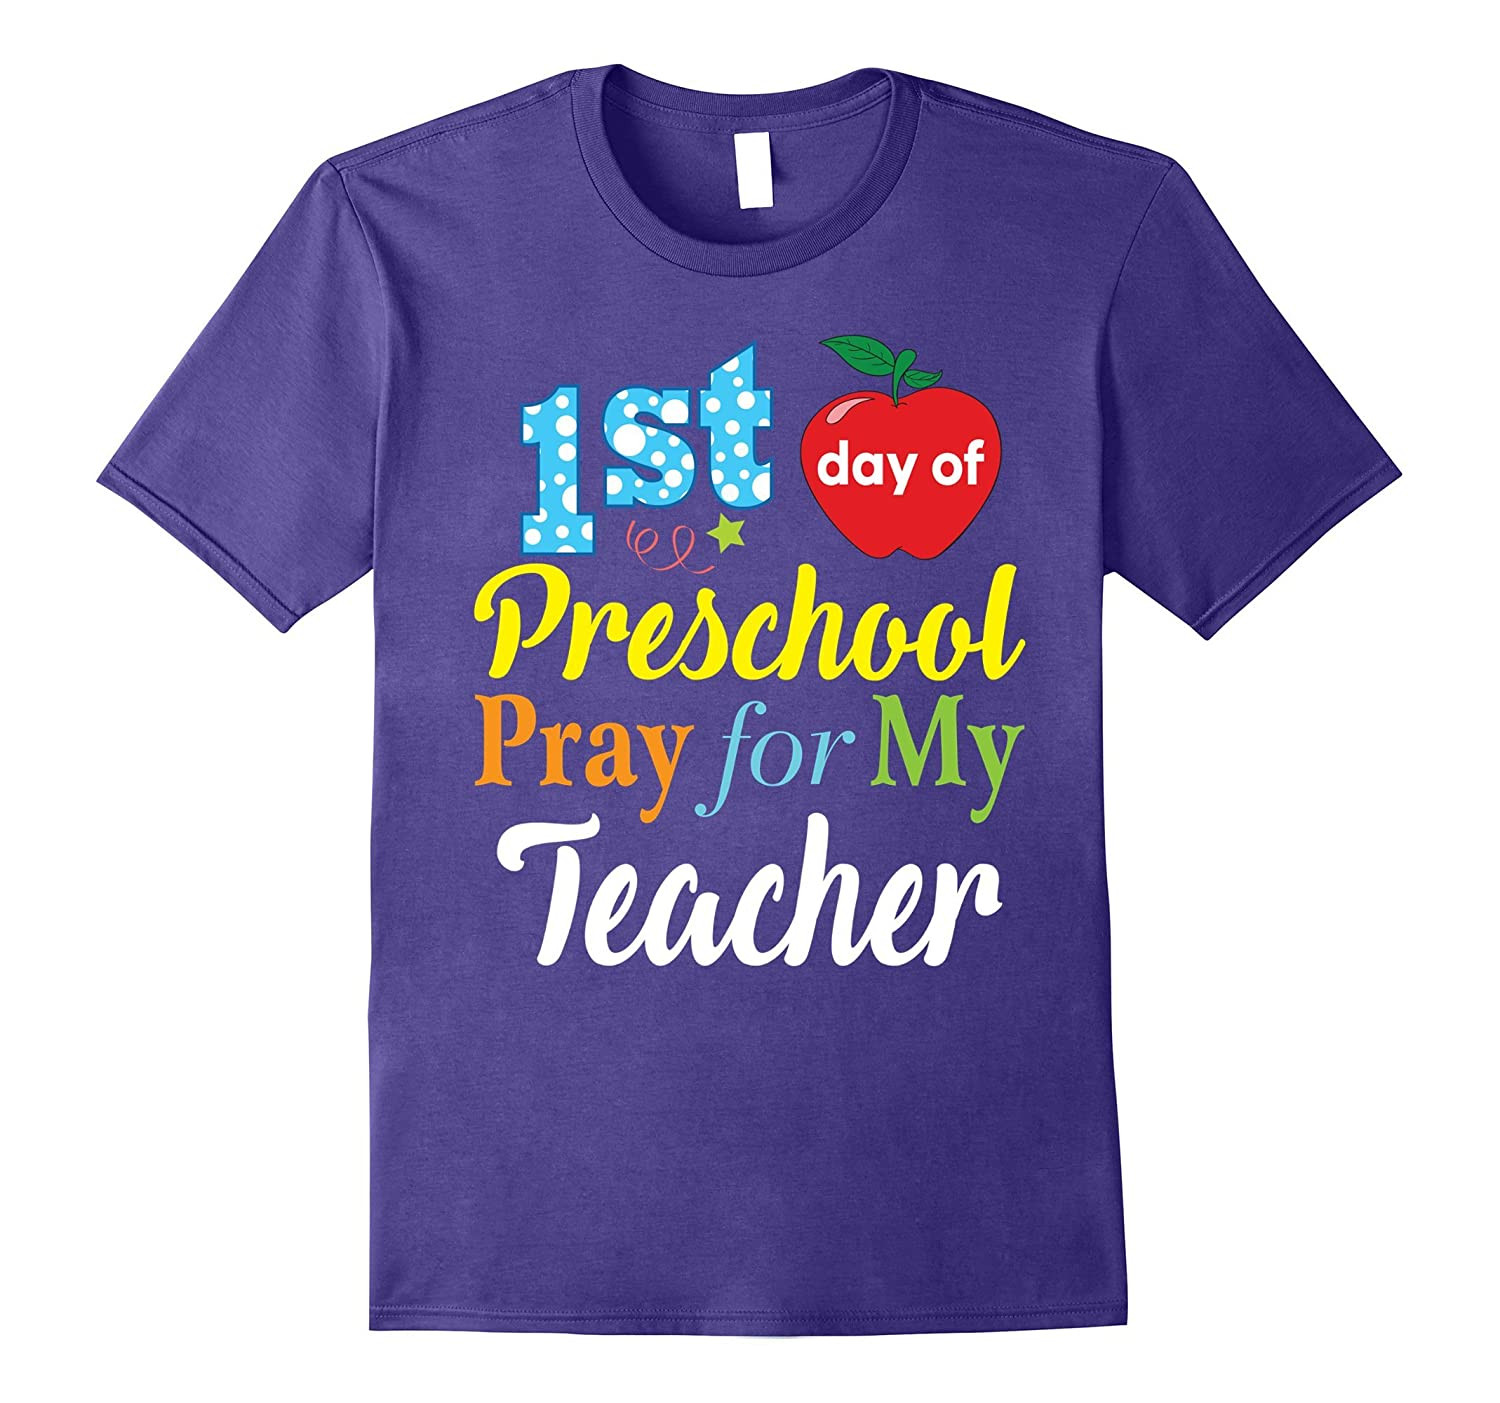 Preschool T Shirt Ideas
 First Day of Preschool Pray for My Teacher T Shirt Kids BN